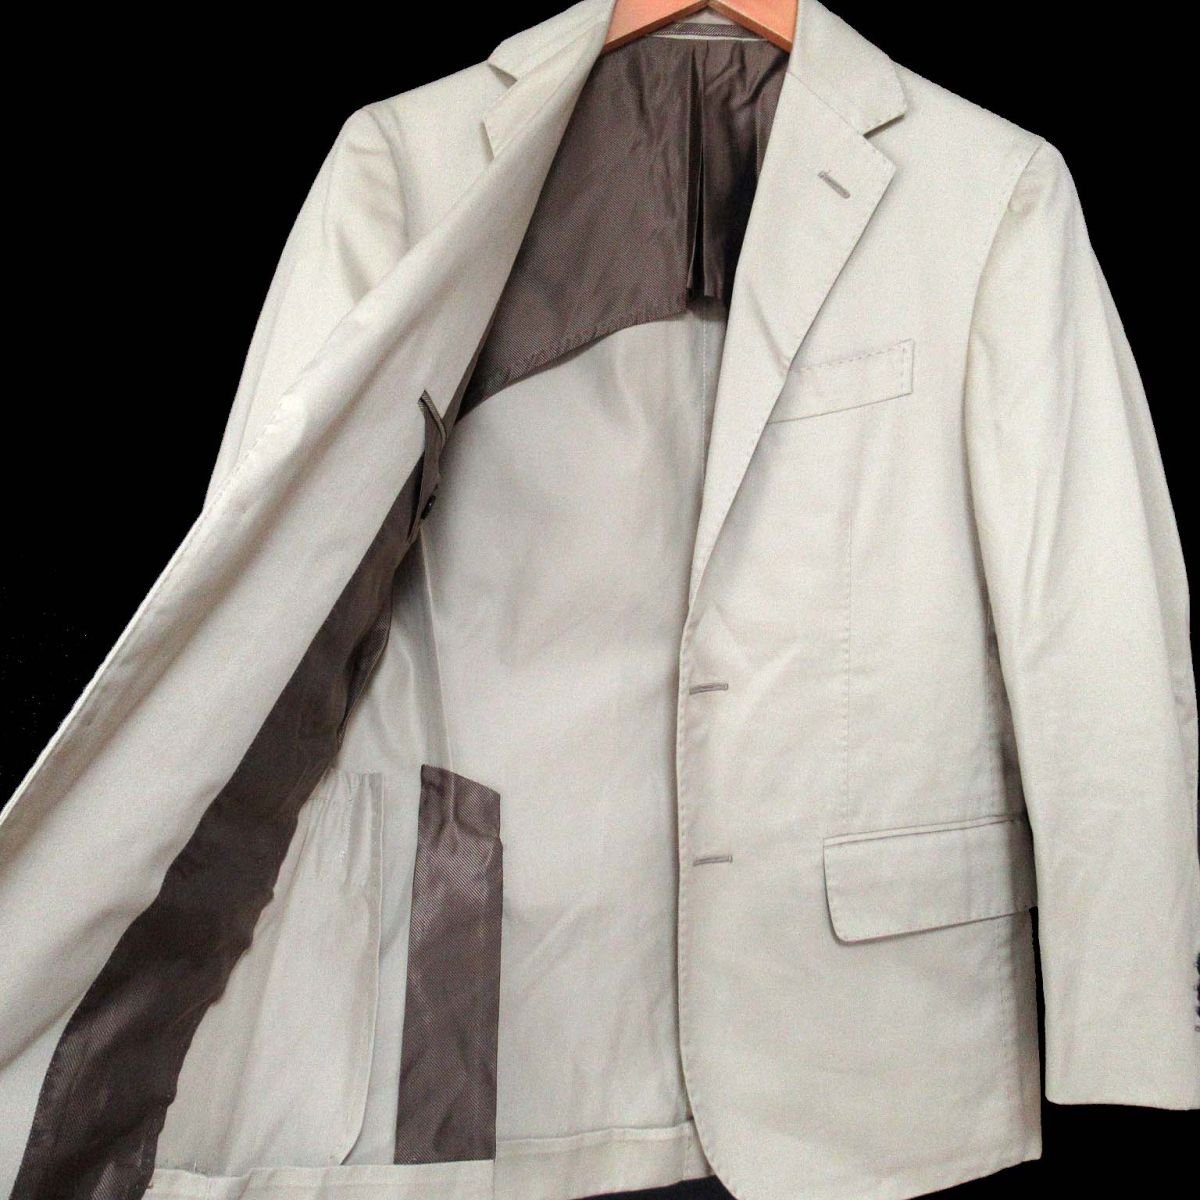  beautiful goods STILE LATINO stay rela Tino single tsu il tailored jacket size 42 beige C0405